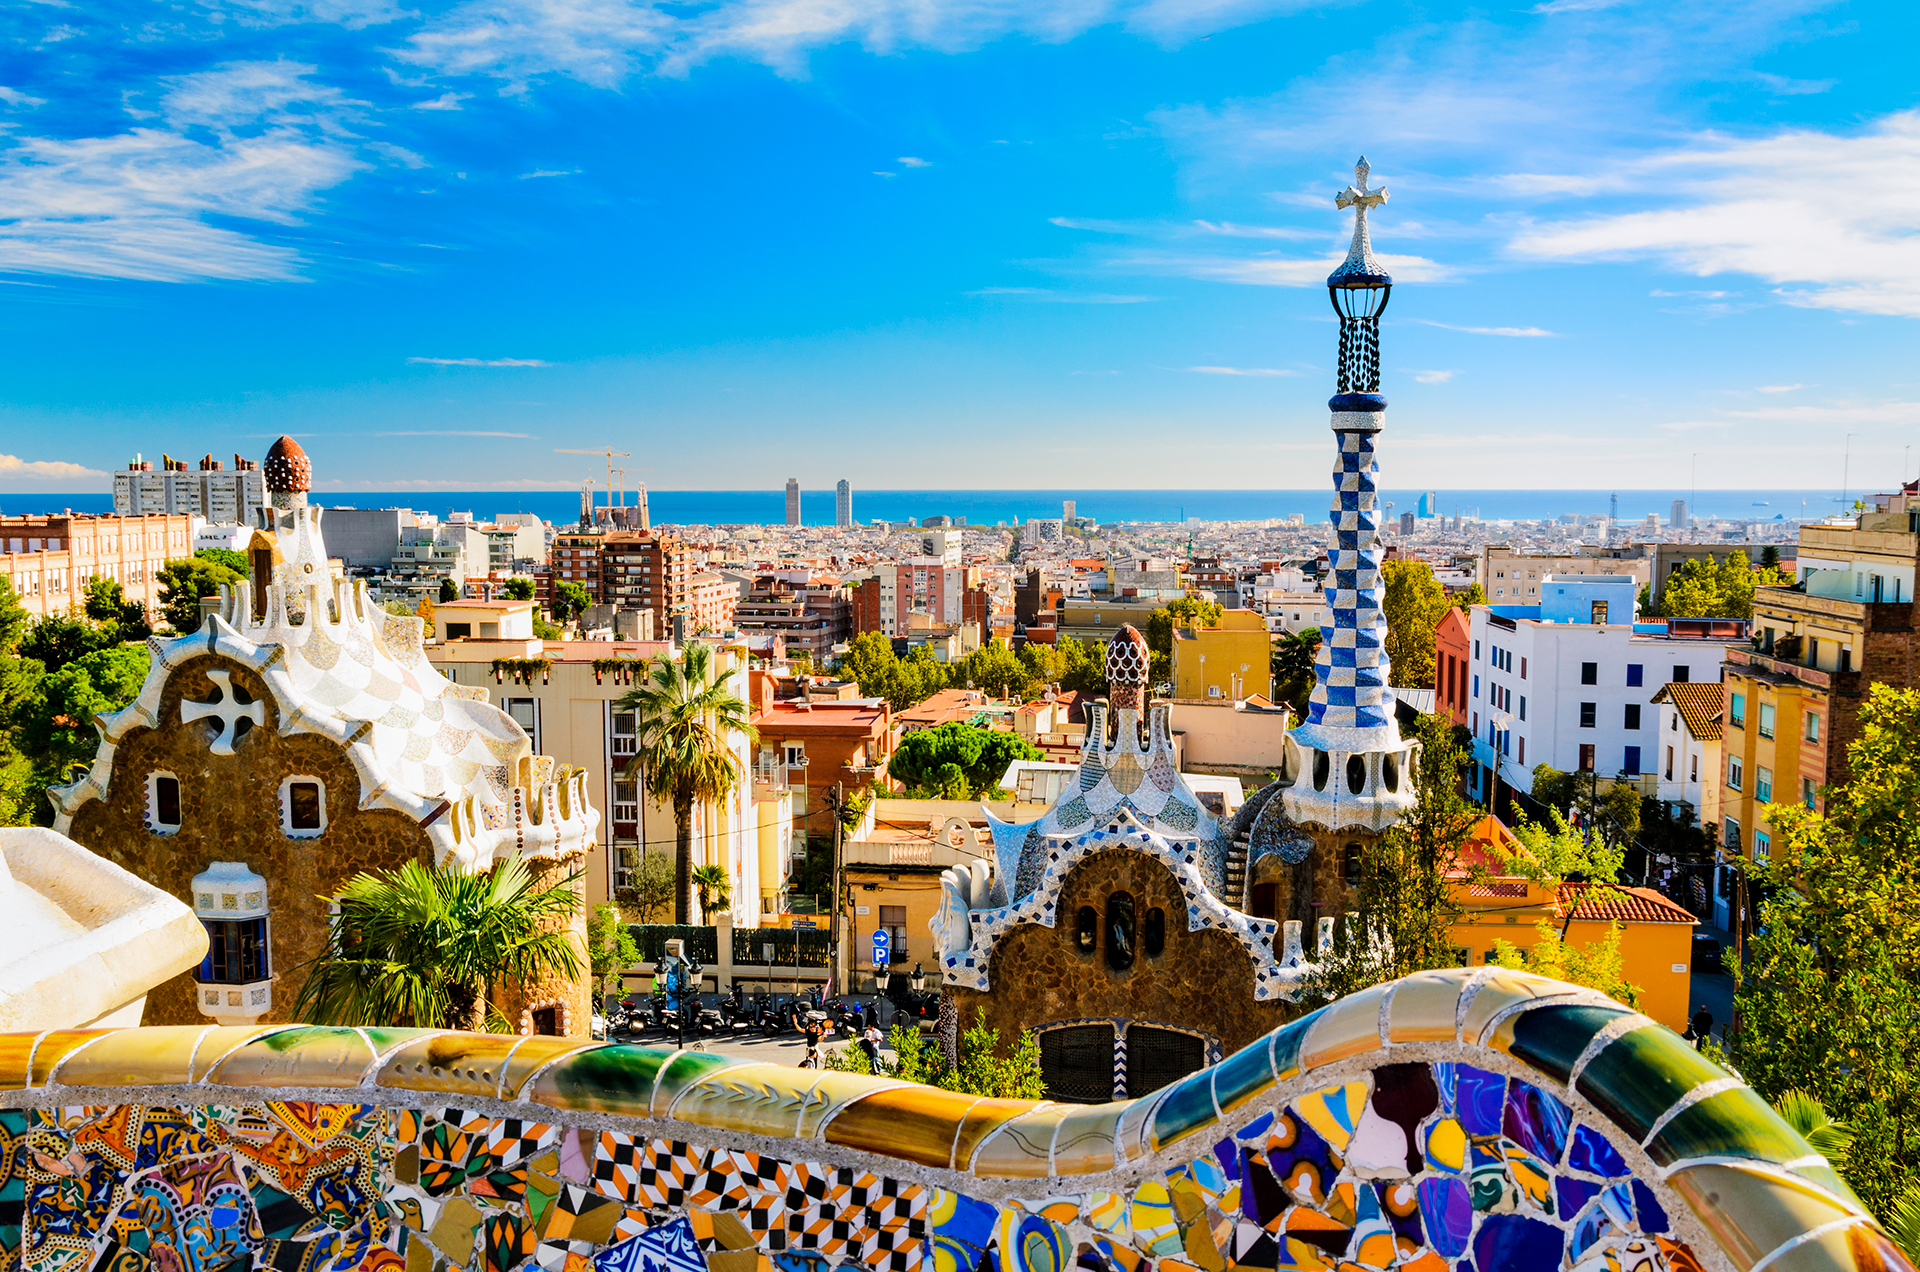 Barcelona, en España, es uno de los destinos en donde se pueden volcar inversiones para participar de proyectos inmobiliarios